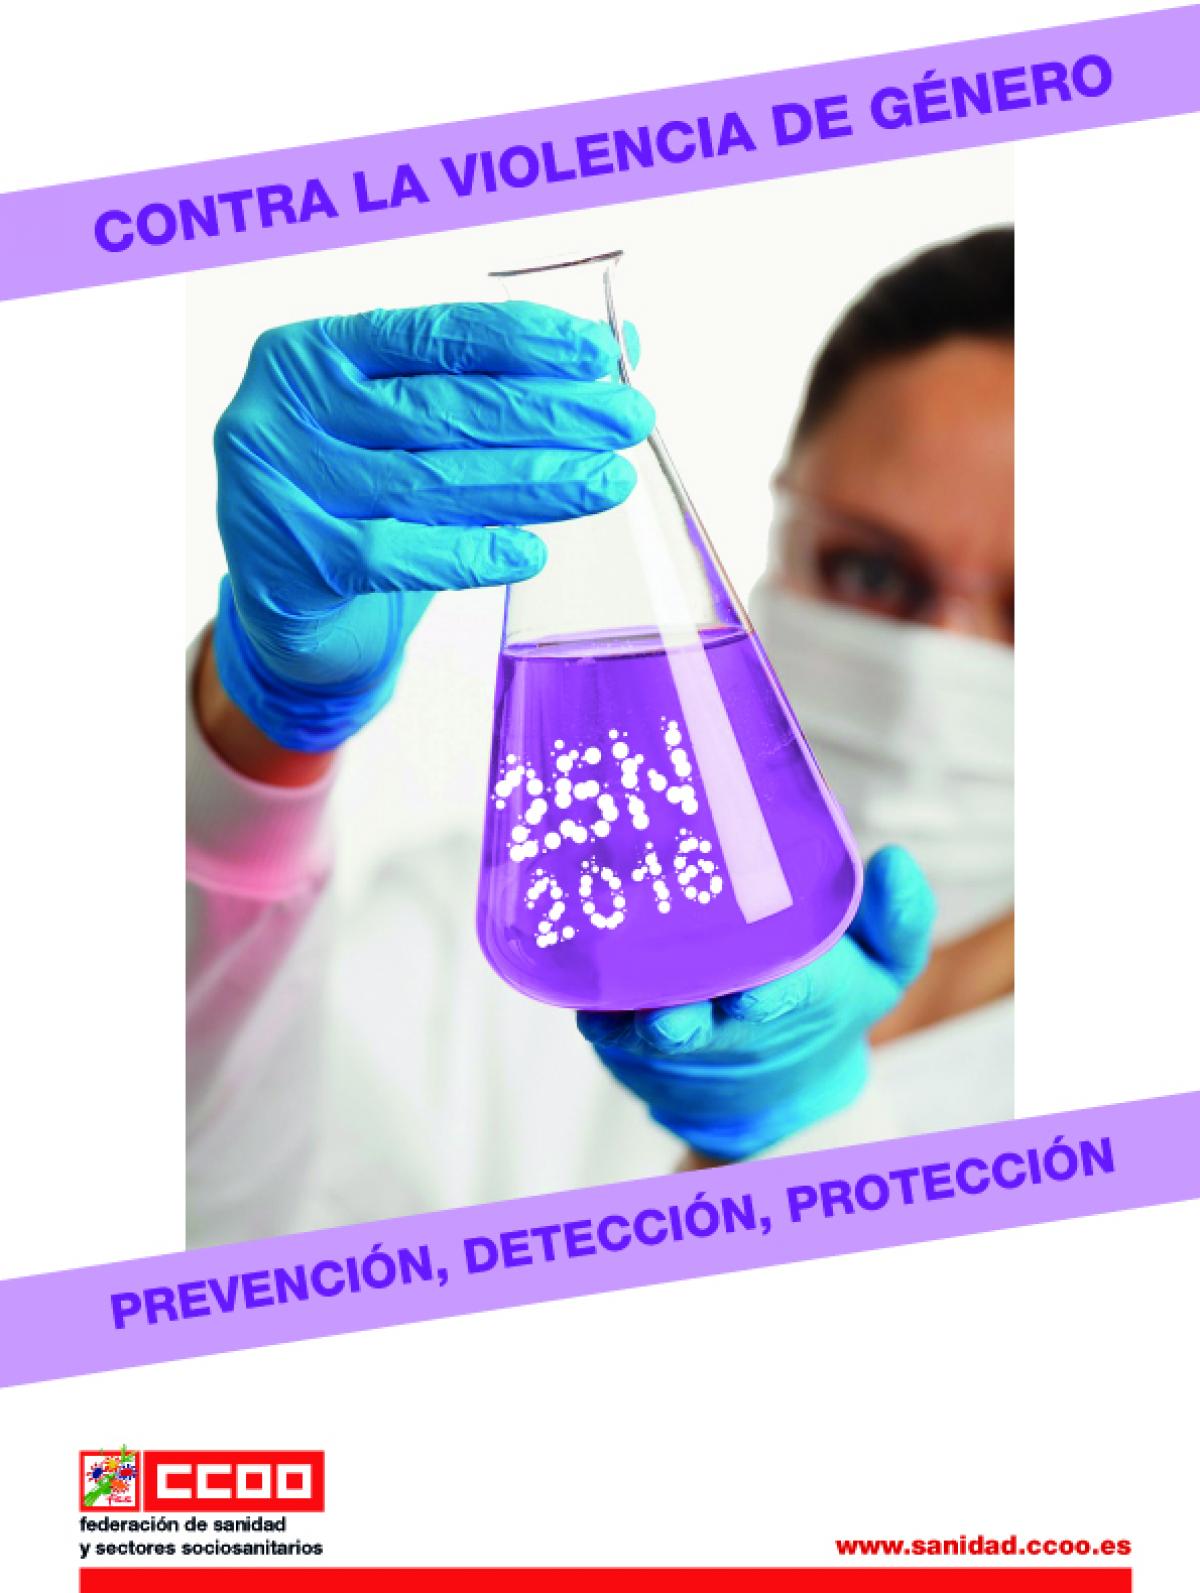 Imagen de la campaña ¡Prevención, detección, protección y derechos ya!, de la FSS